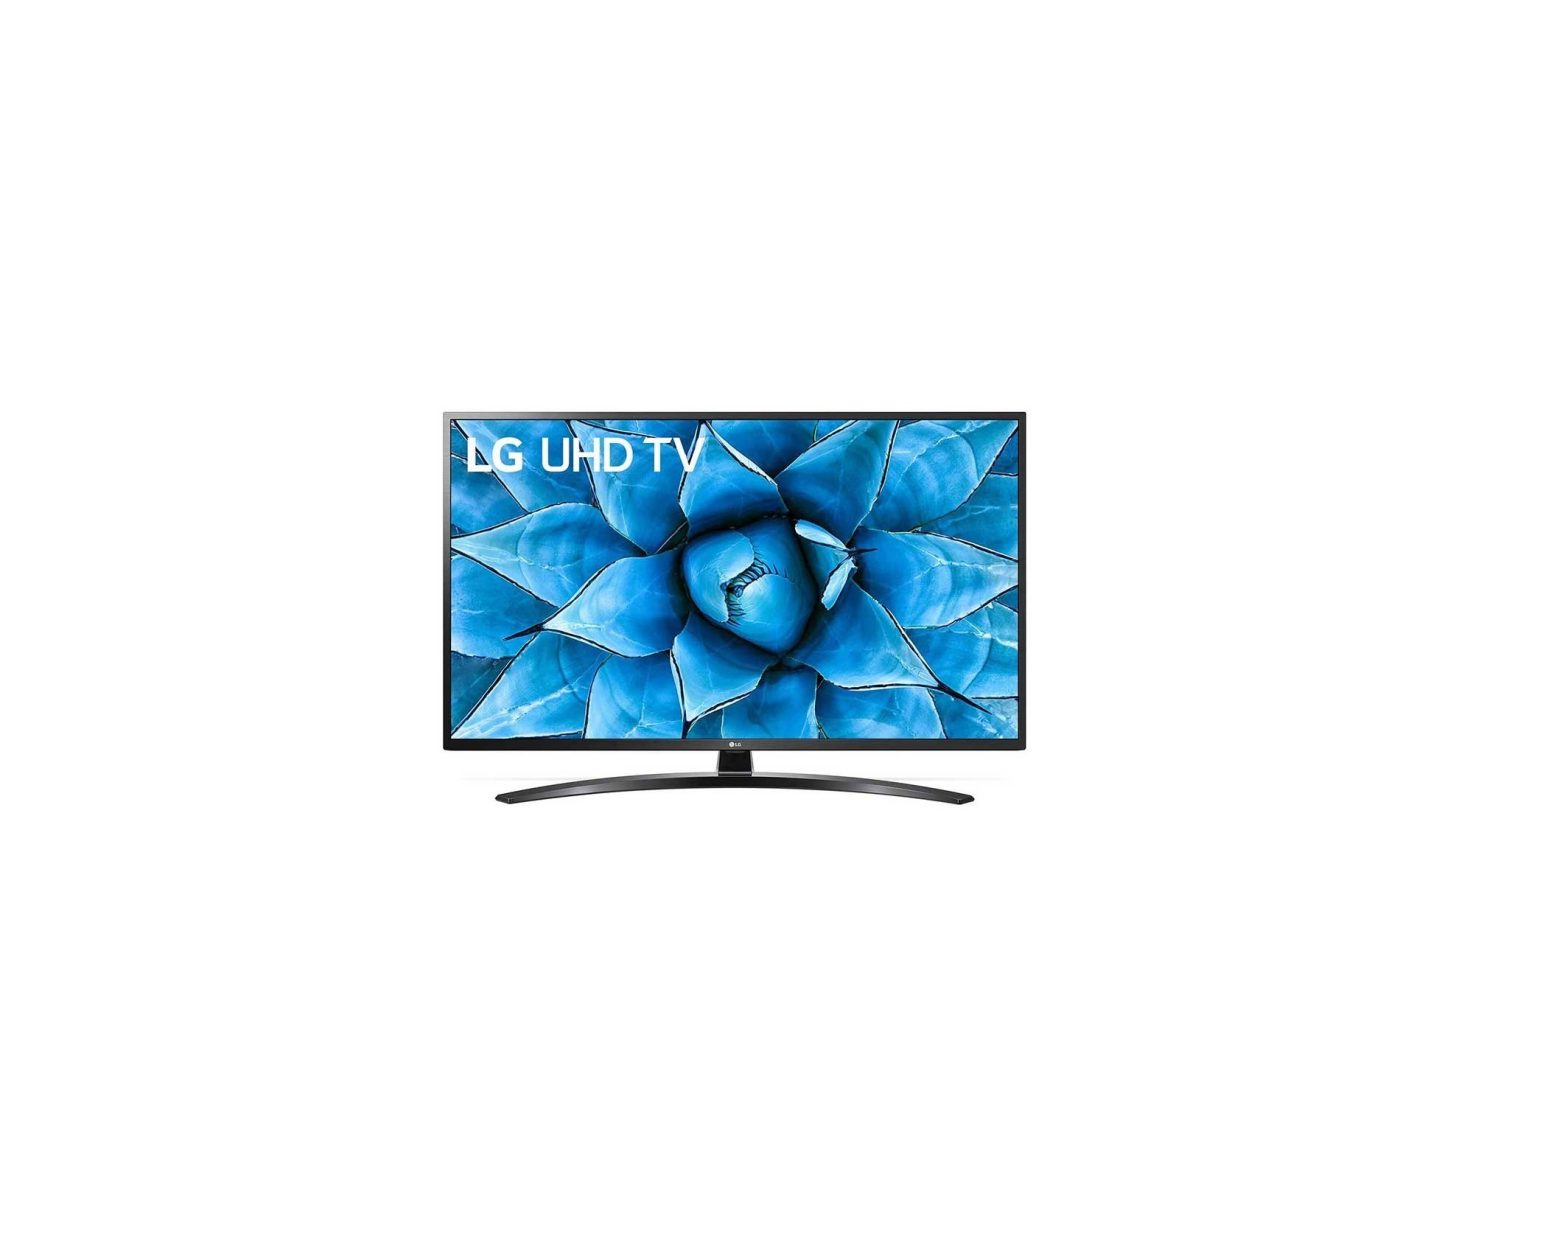 LG UN74 65 Inch 4K UHD Smart TV User Guide